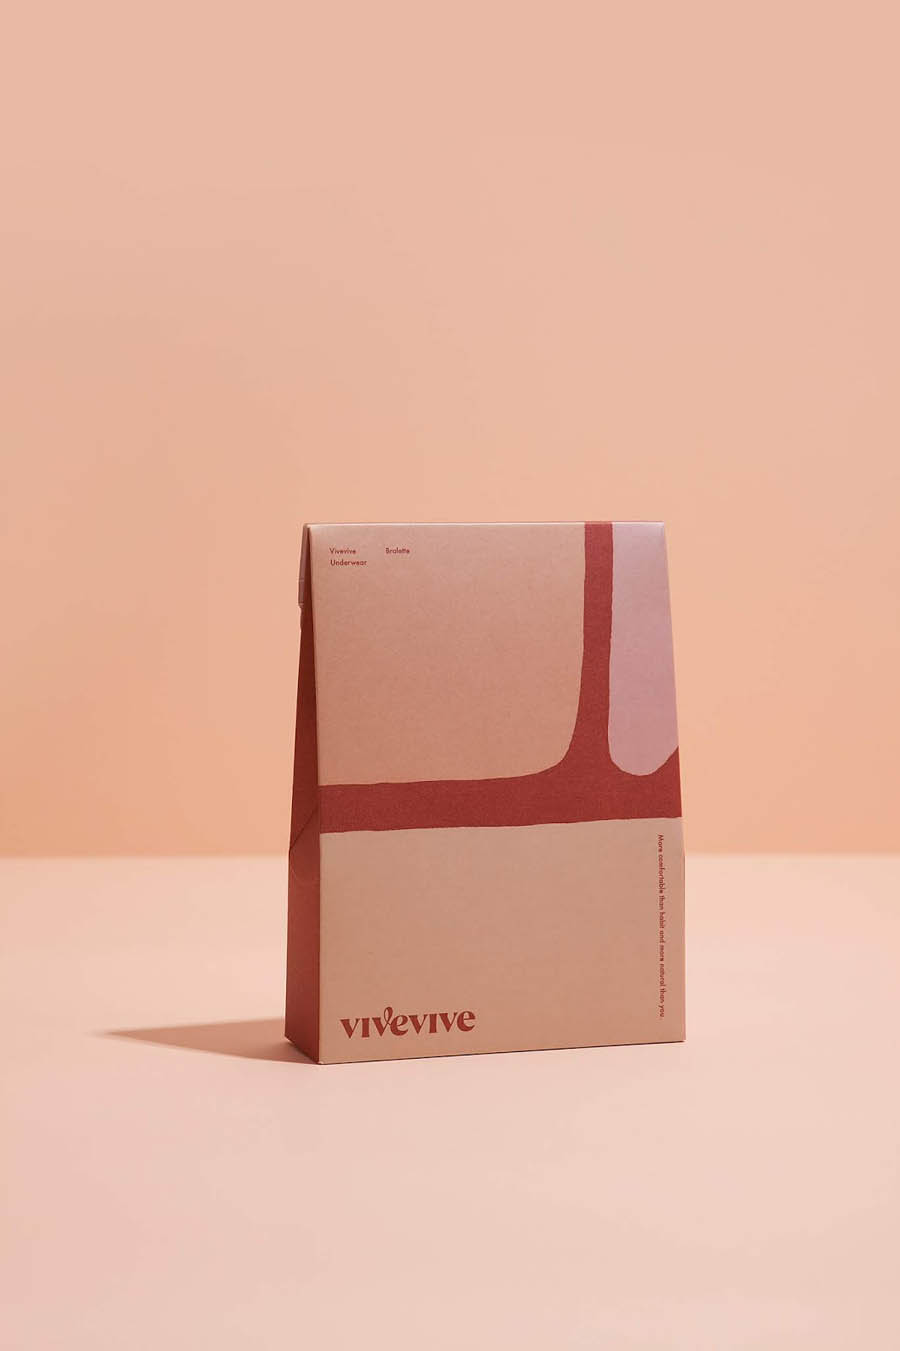 国外Vivevive内衣品牌包装设计欣赏,PS教程,素材中国网